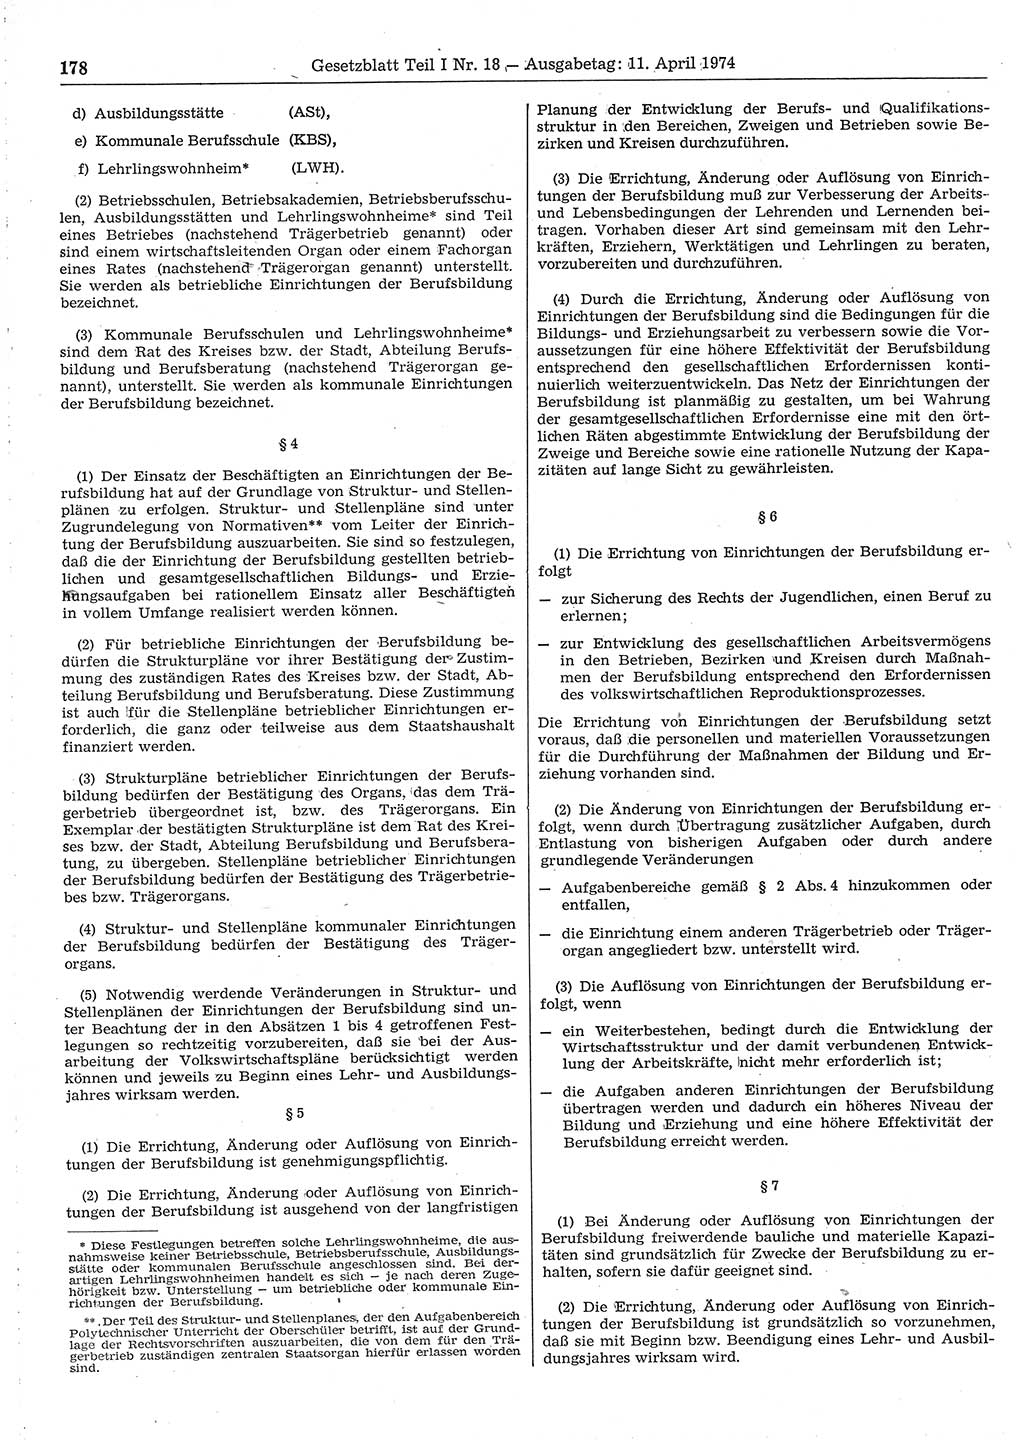 Gesetzblatt (GBl.) der Deutschen Demokratischen Republik (DDR) Teil Ⅰ 1974, Seite 178 (GBl. DDR Ⅰ 1974, S. 178)